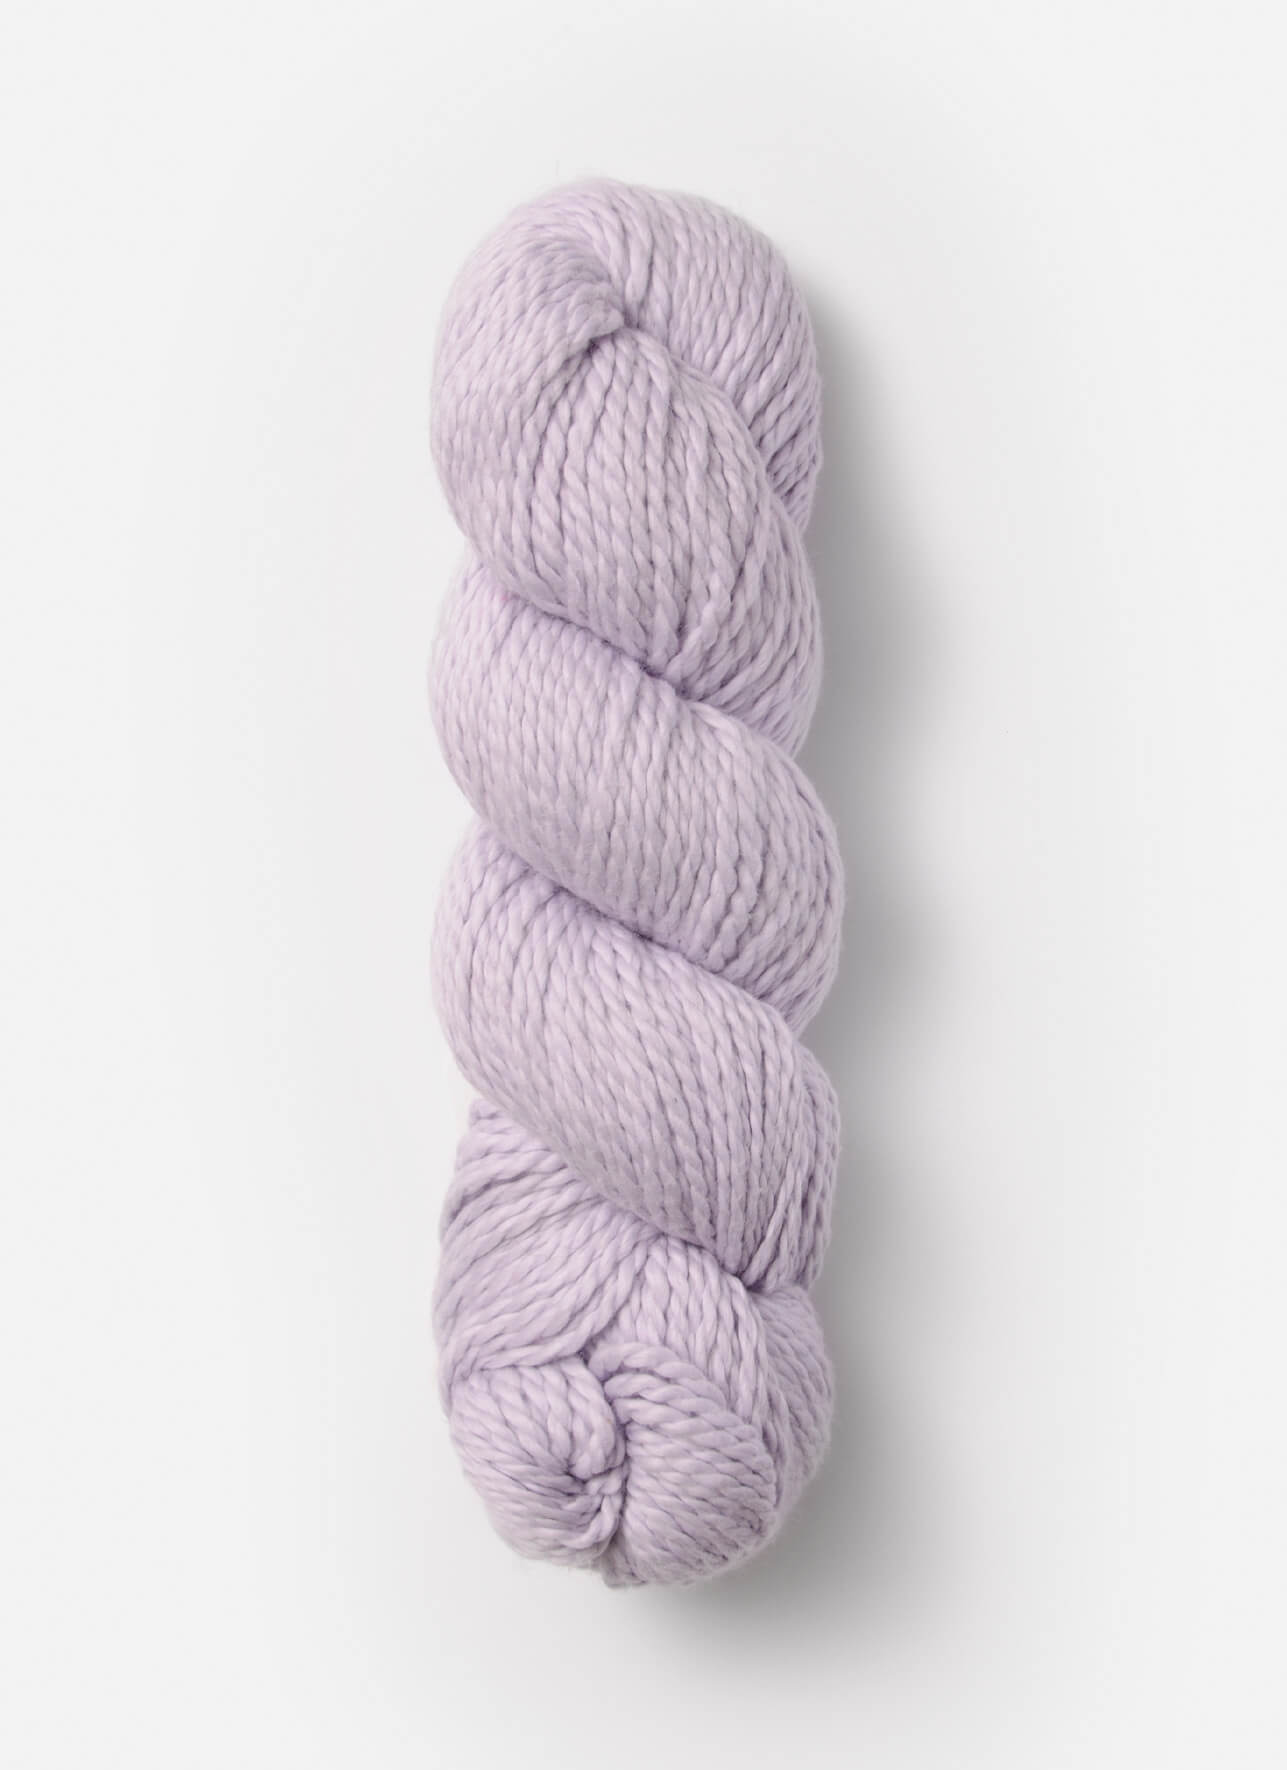 No. 644: Lavender